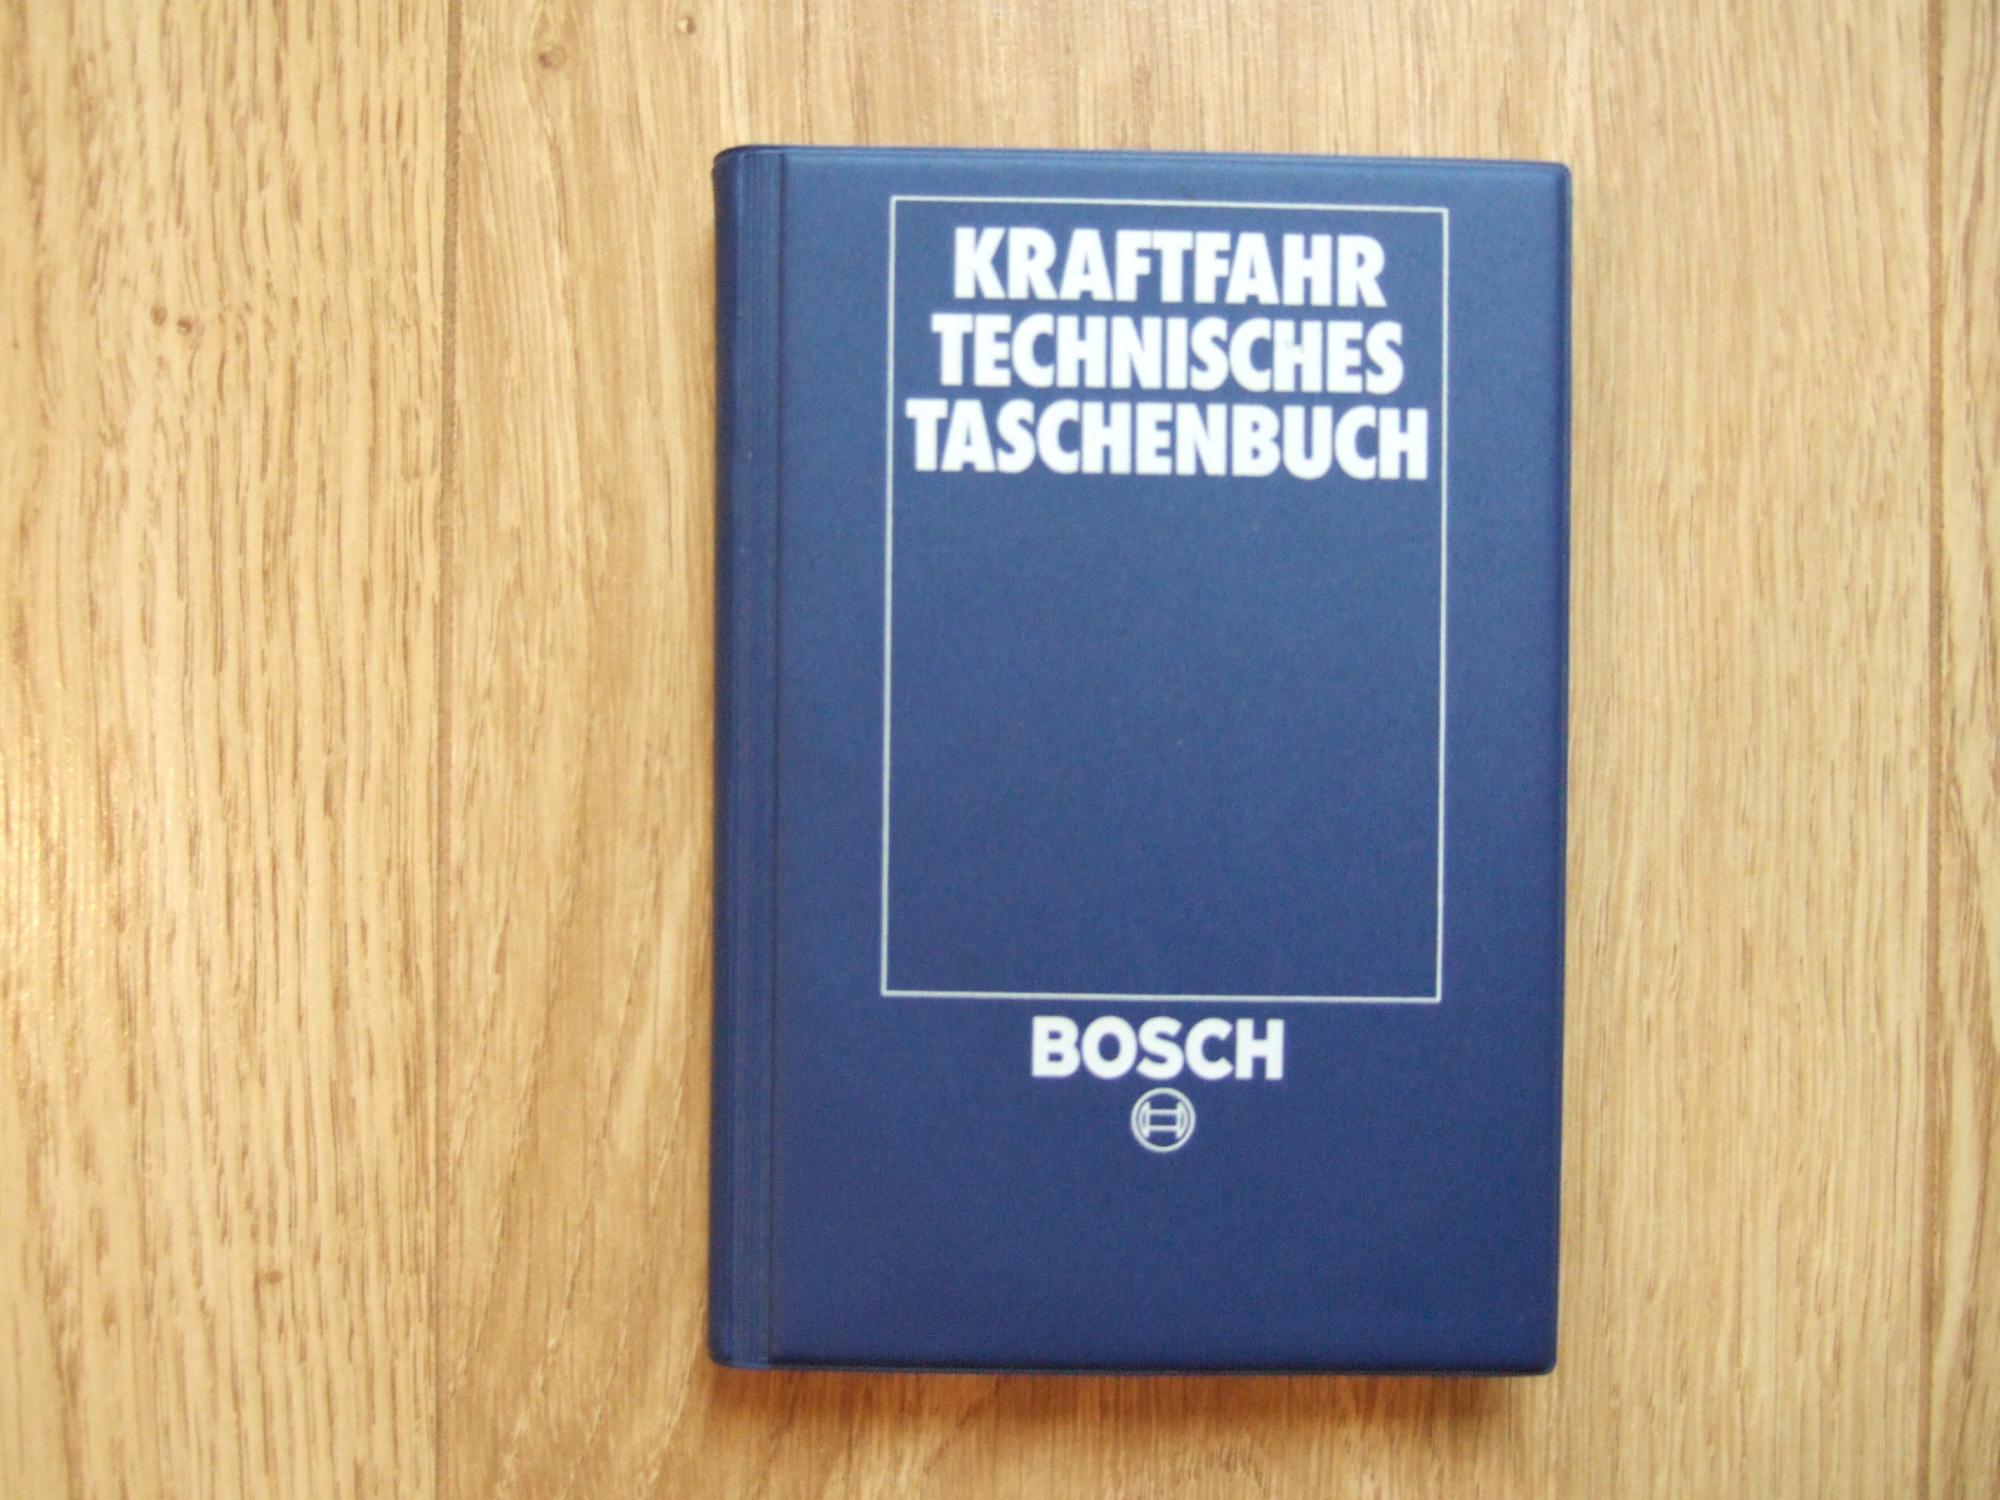 Kraftfahrtechnisches Taschenbuch.